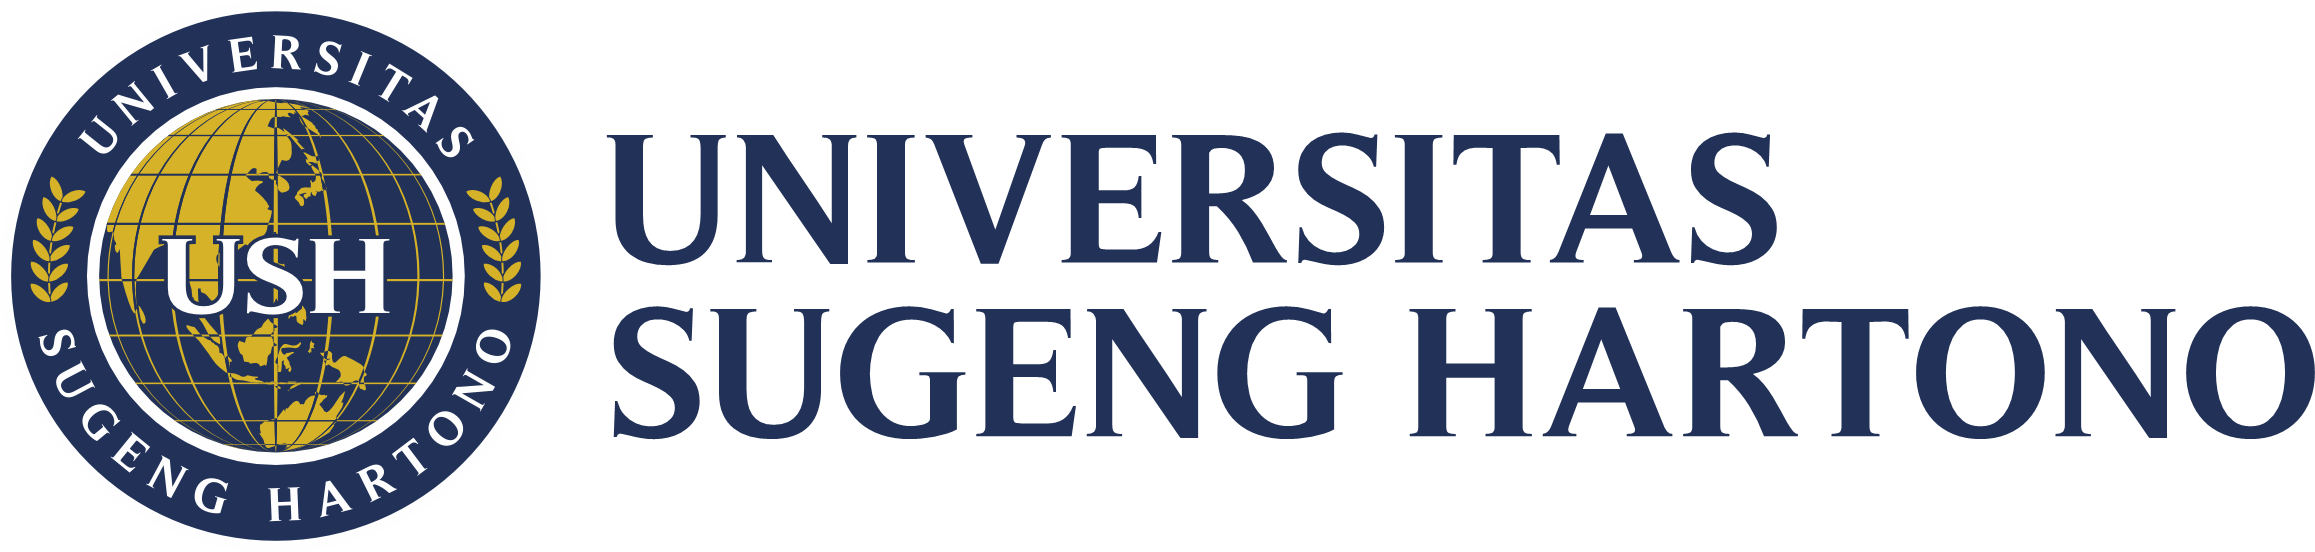 Universitas Sugeng Hartono